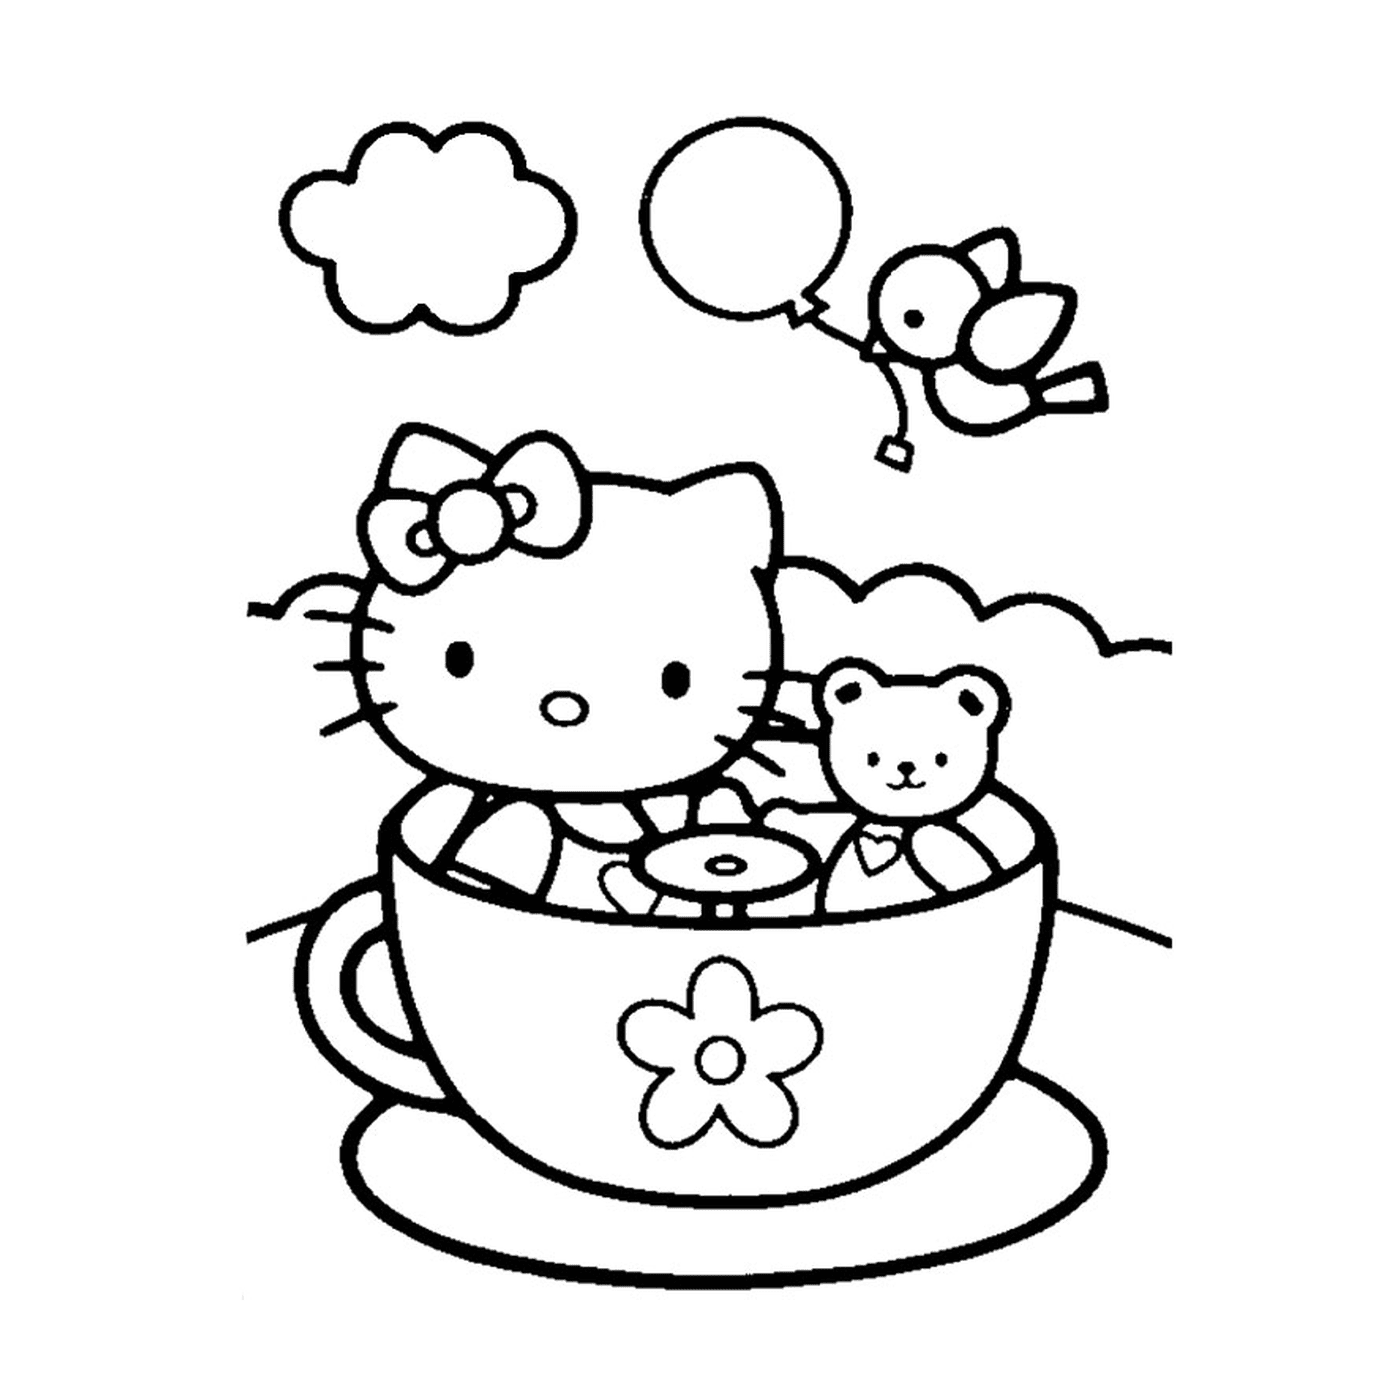  Ciao Kitty seduta in una tazza da tè 